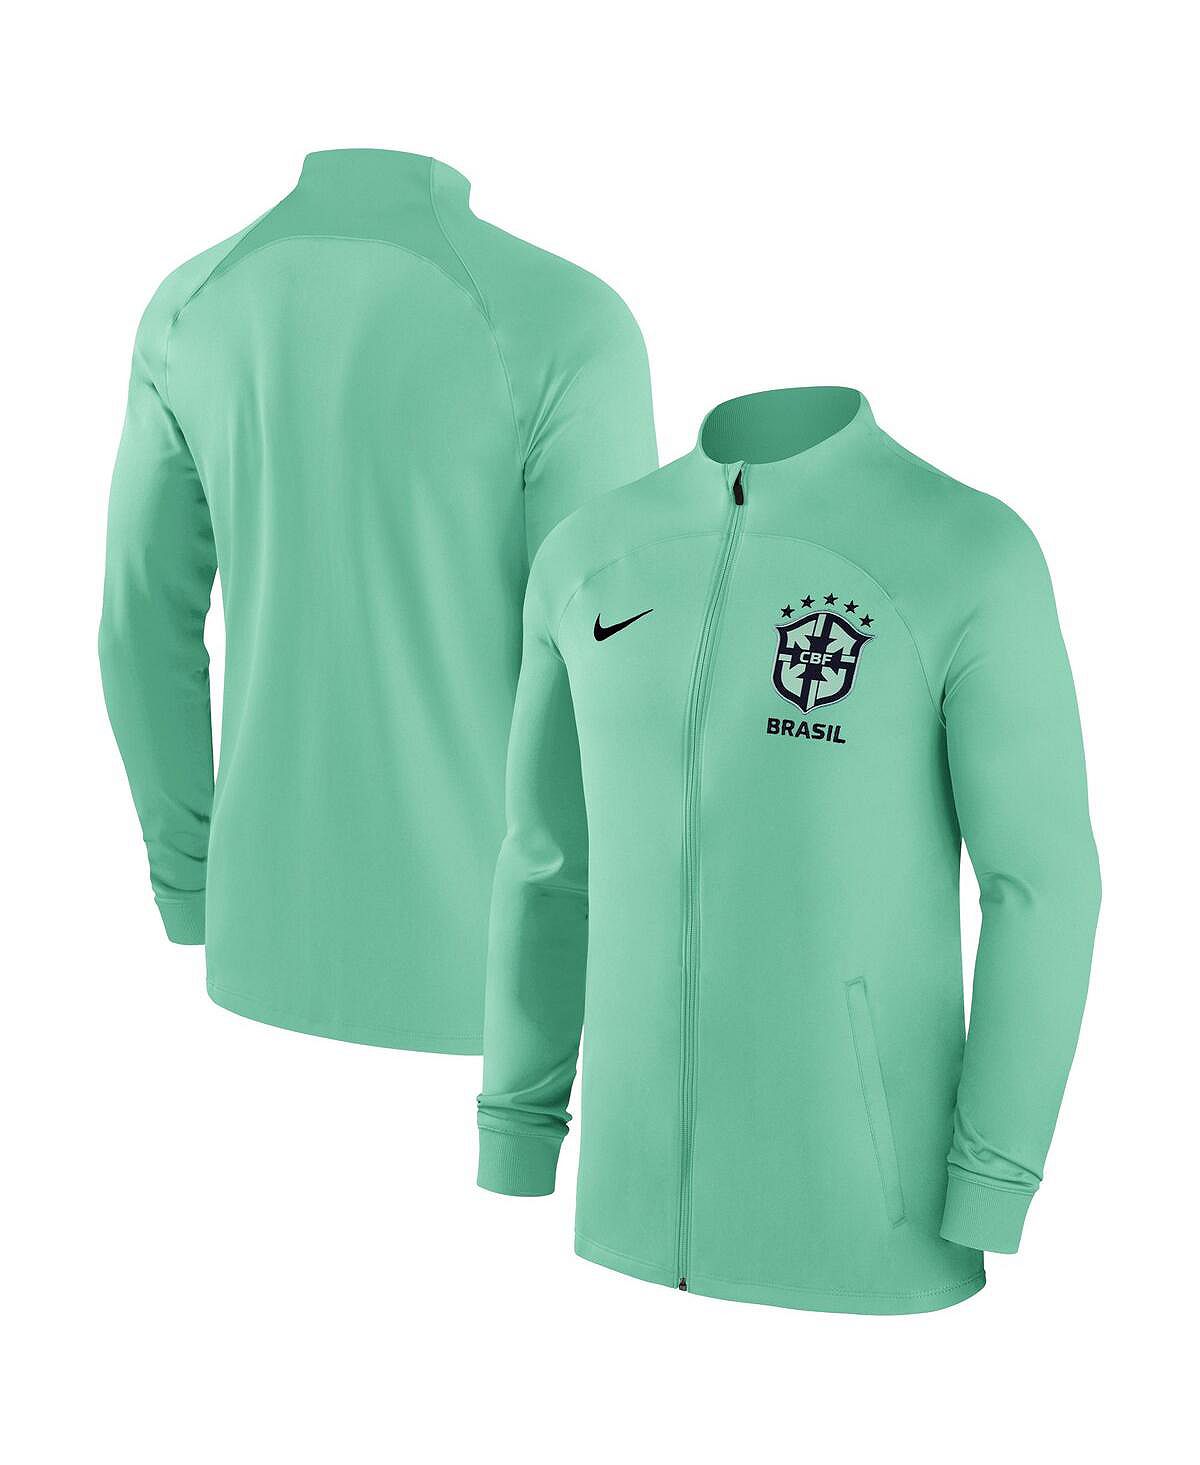 Мужская спортивная куртка green strike raglan с молнией во всю длину, сборная бразилии, спортивная спортивная куртка Nike, зеленый